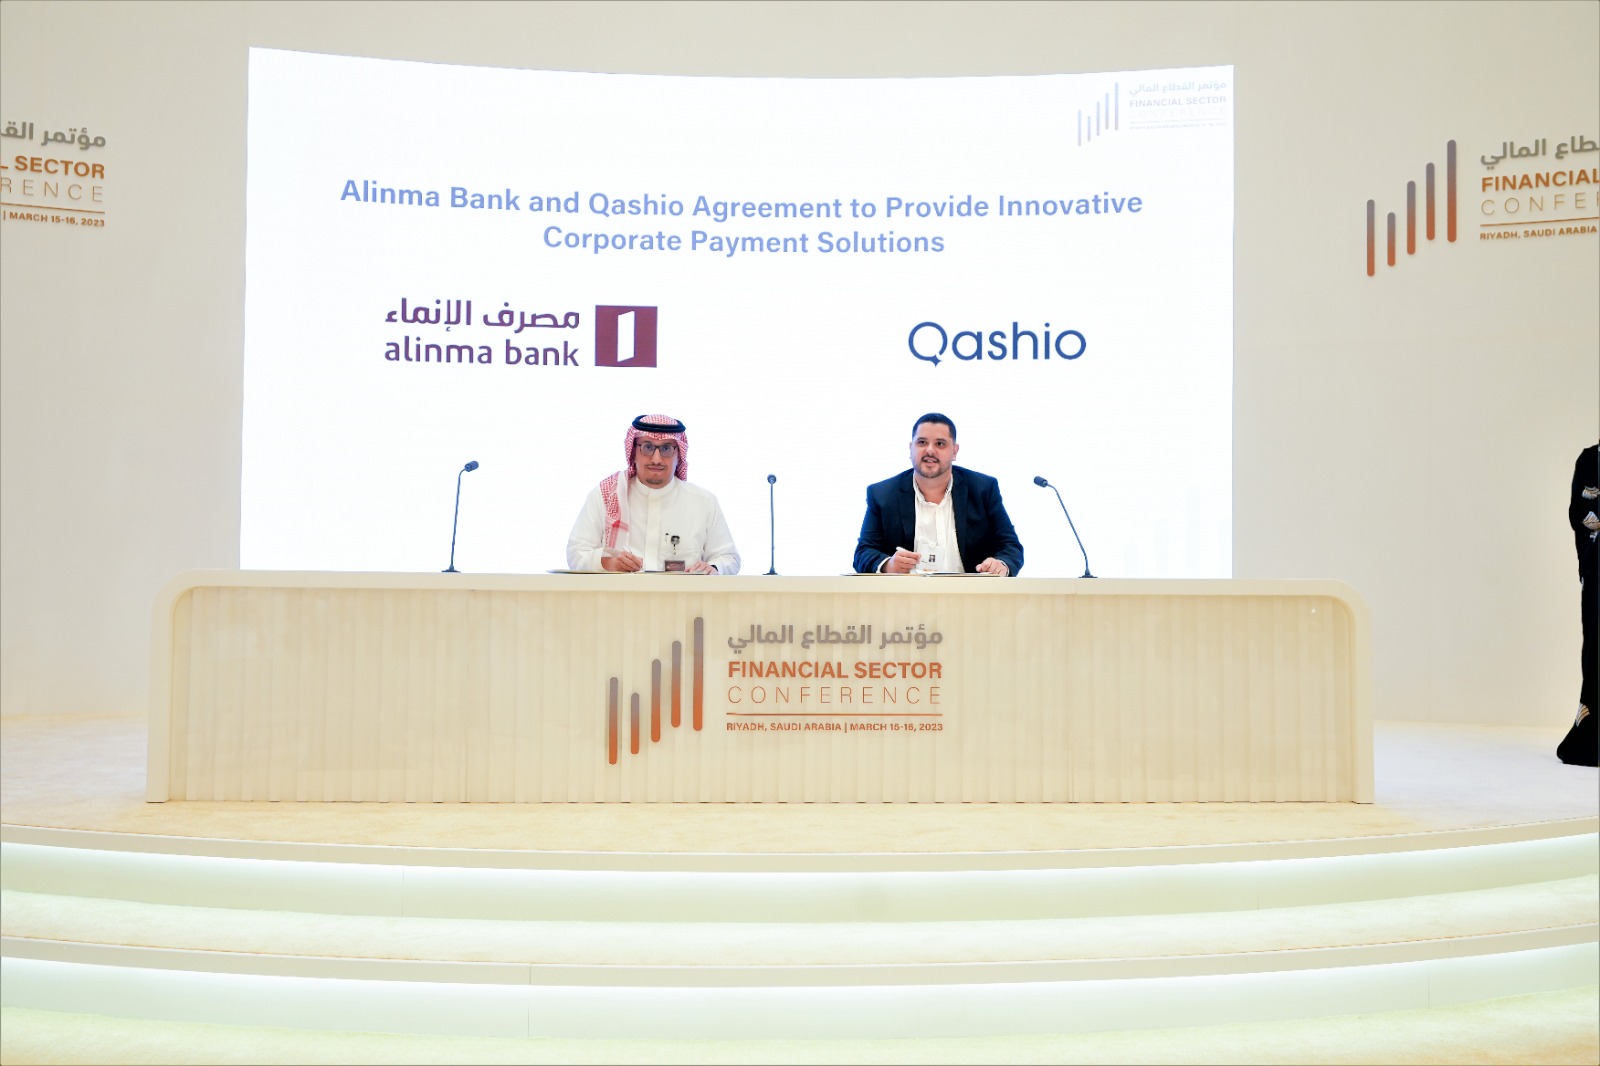 منصة إدارة النفقات كاشيو تتعاون مع مصرف الإنماء لطرح حلول المنصة الرائدة للعملاء في المملكة العربية السعودية